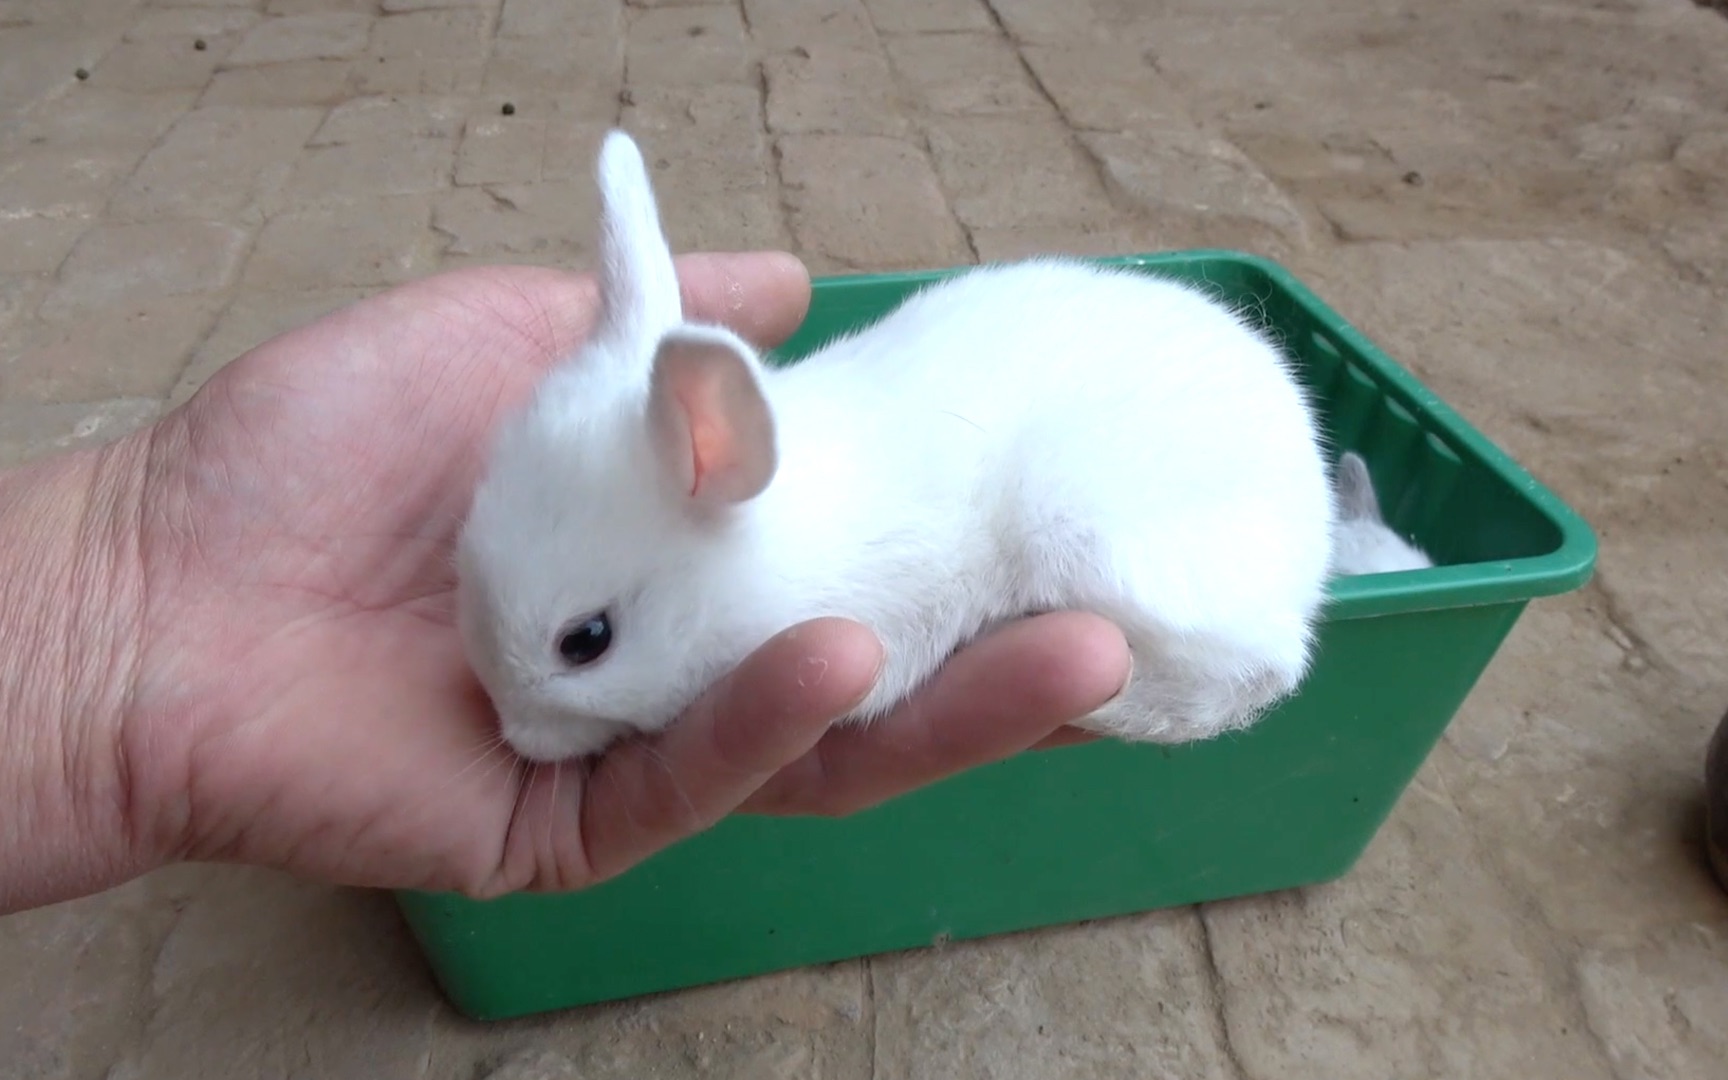 迷你小兔子长大了,开始自己吃东西,让兔子吃一点胡萝卜!